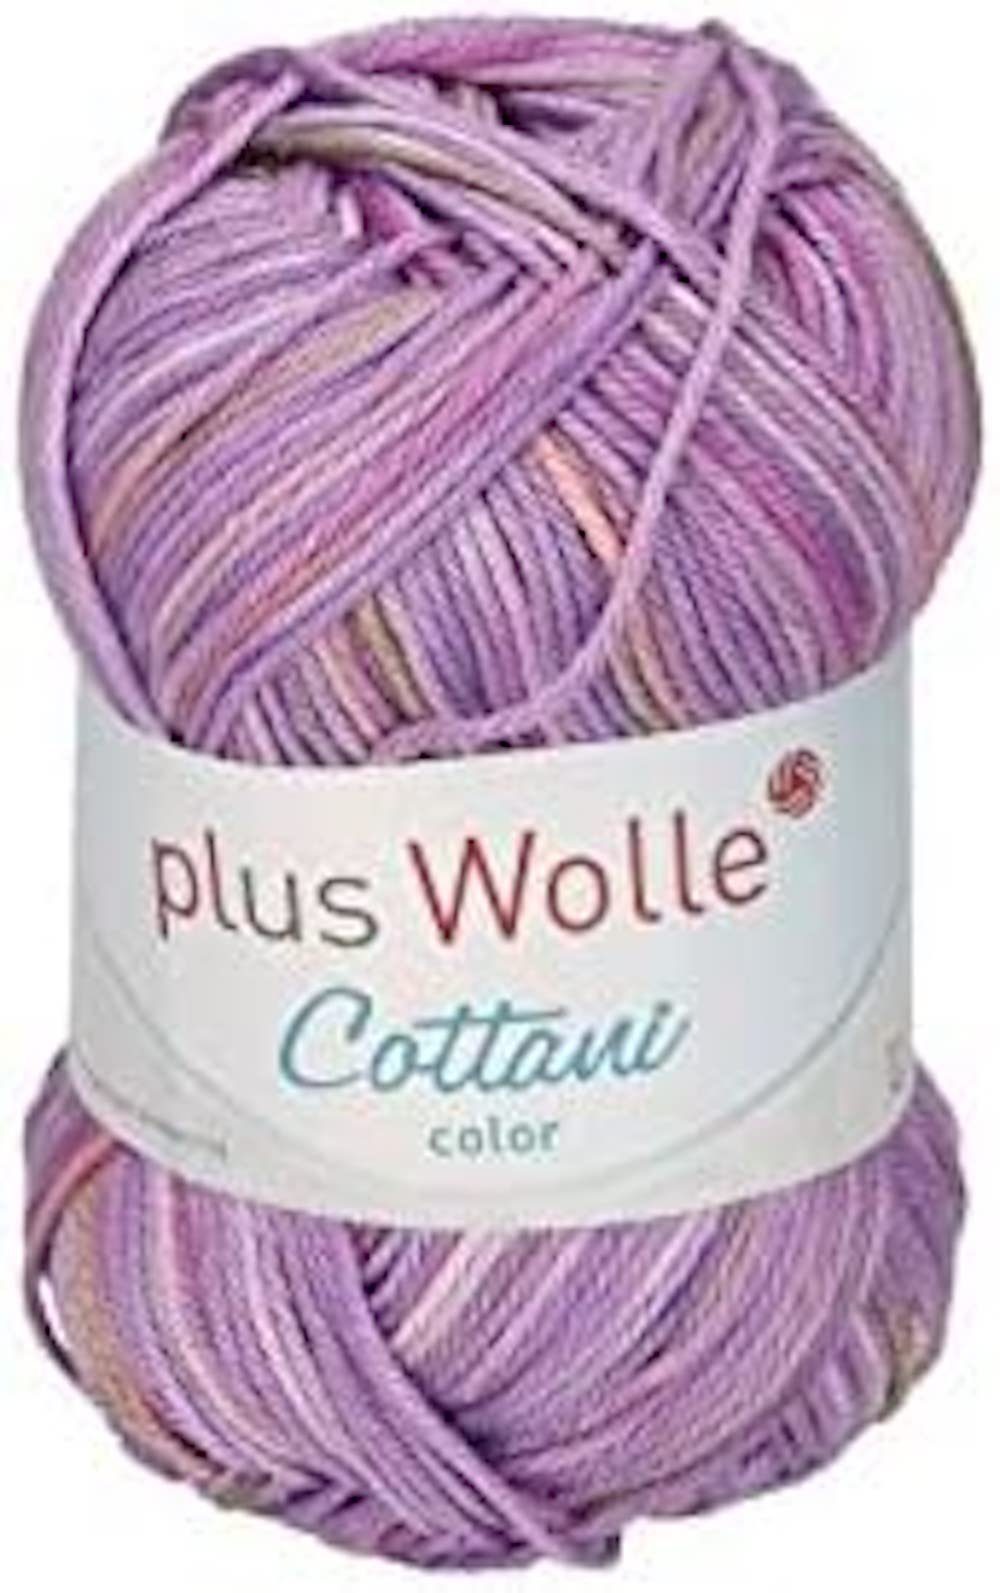 H-Erzmade Dekofigur Plus Wolle Cottani Color, Lila 100% 50g/125m, Baumwolle